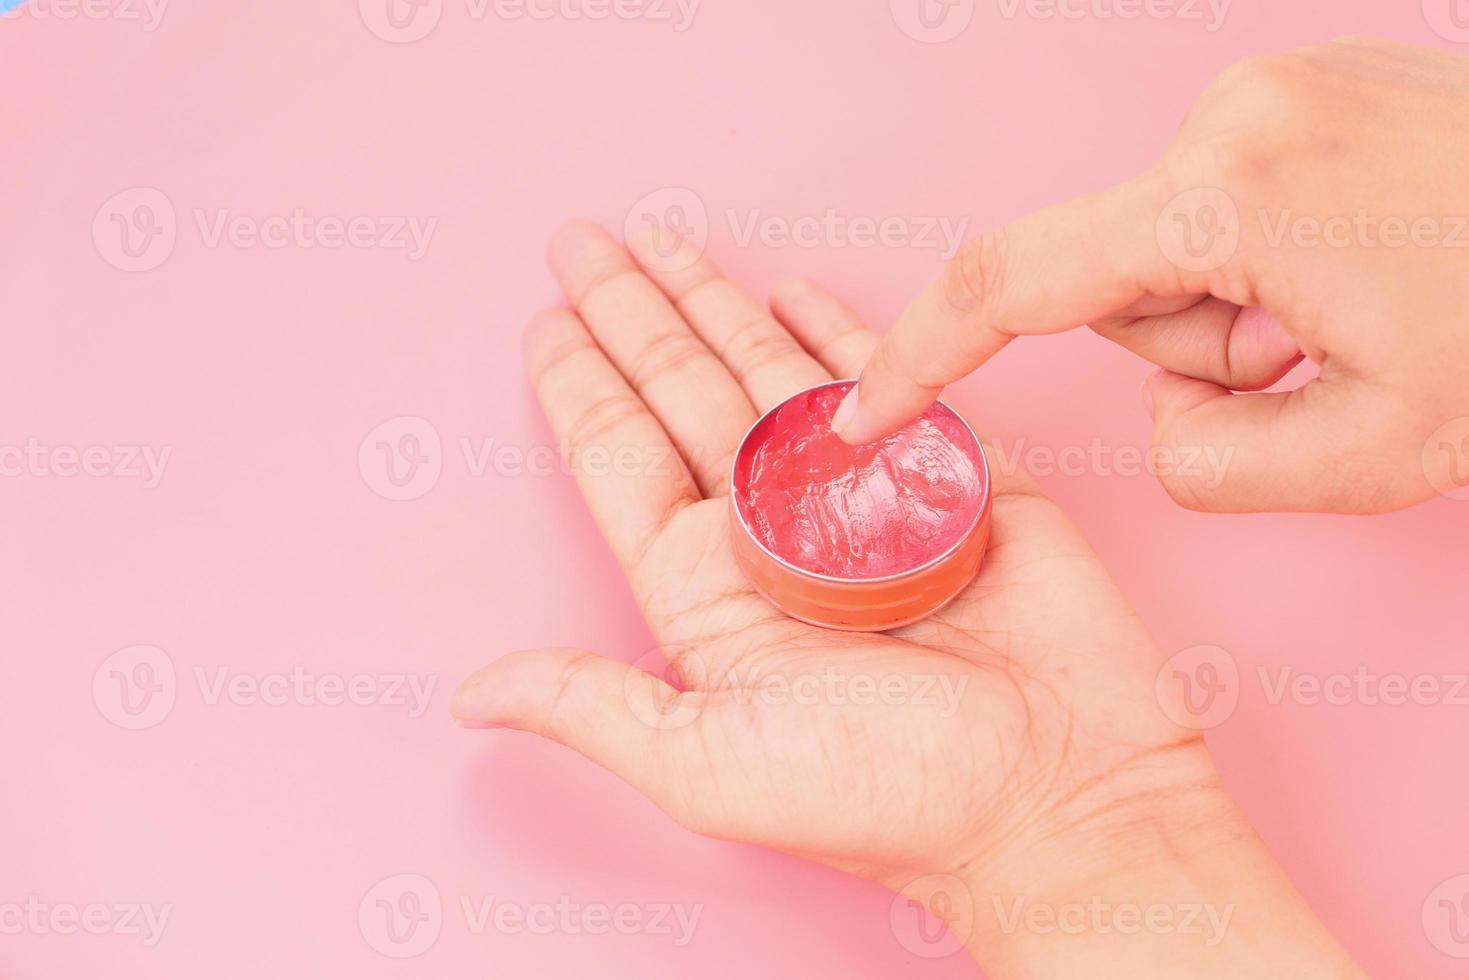 kvinna som använder vaselin på rosa bakgrund foto